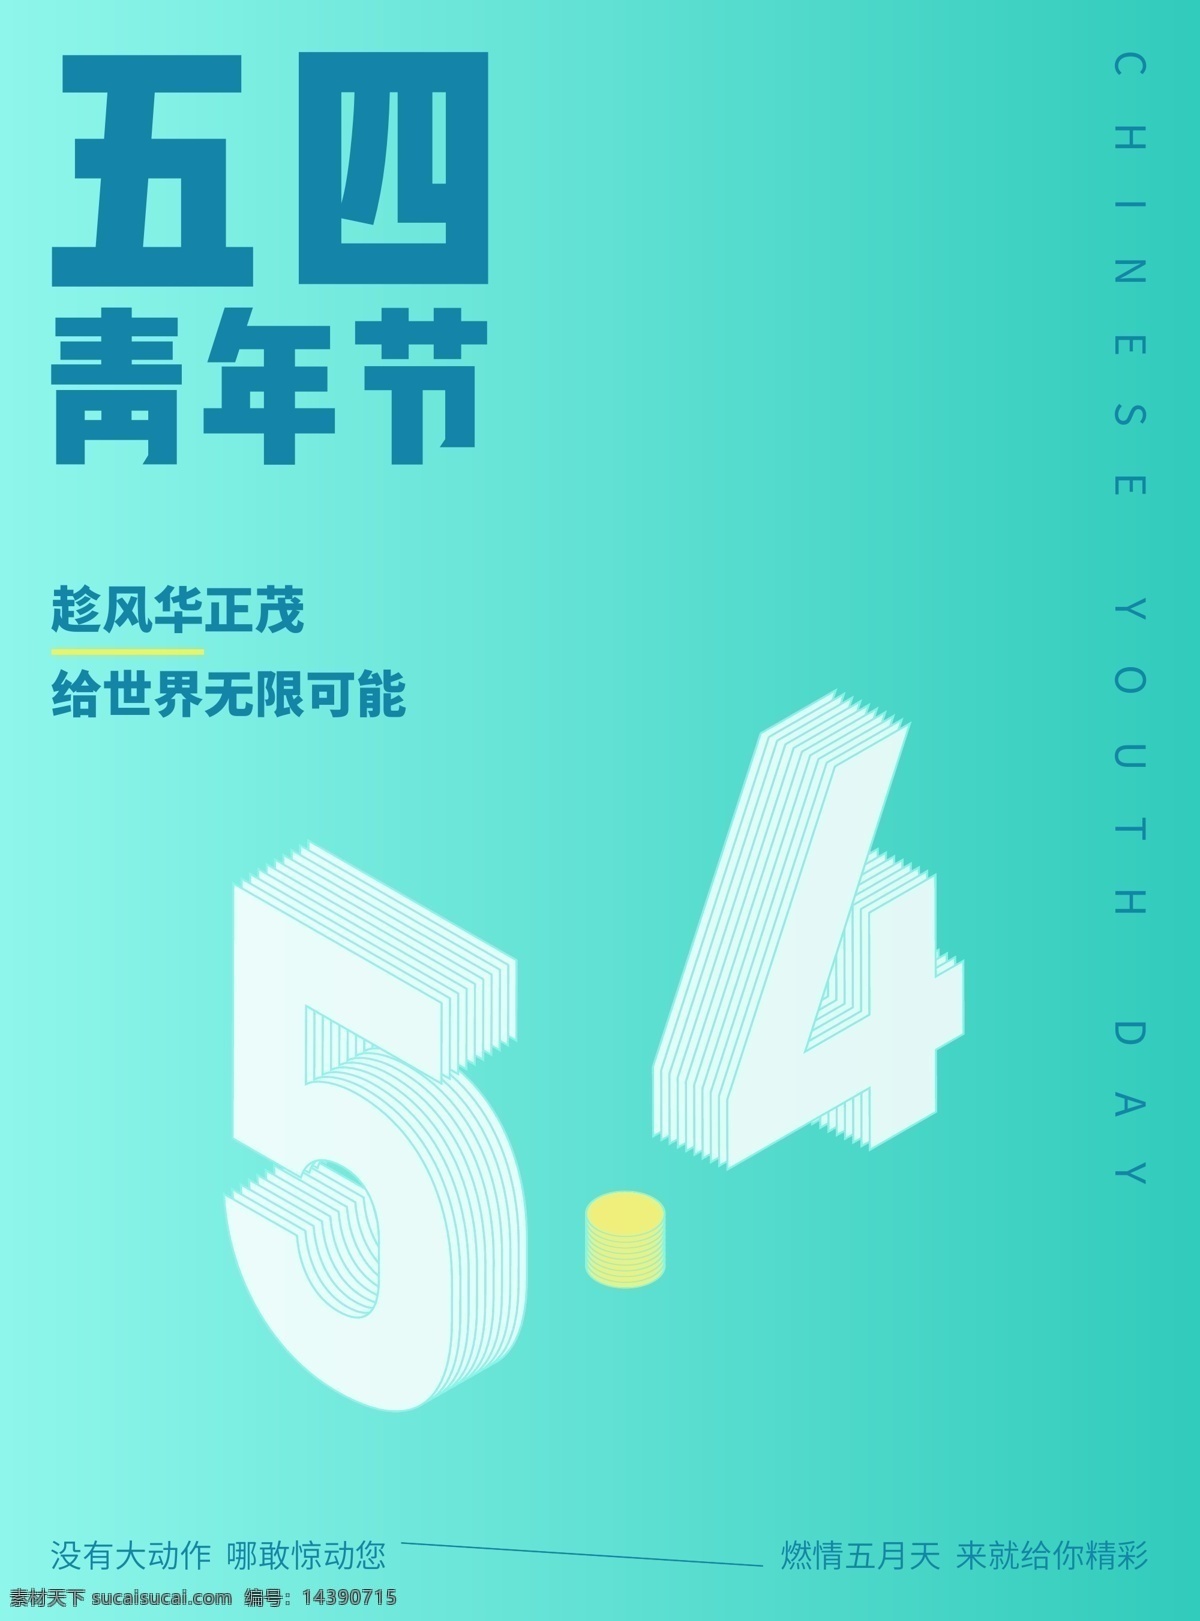 五 四 青年节 活动 海报 数字 小 清新 五四 渐变 蓝绿色 立体 排版 版式 文化艺术 节日庆祝